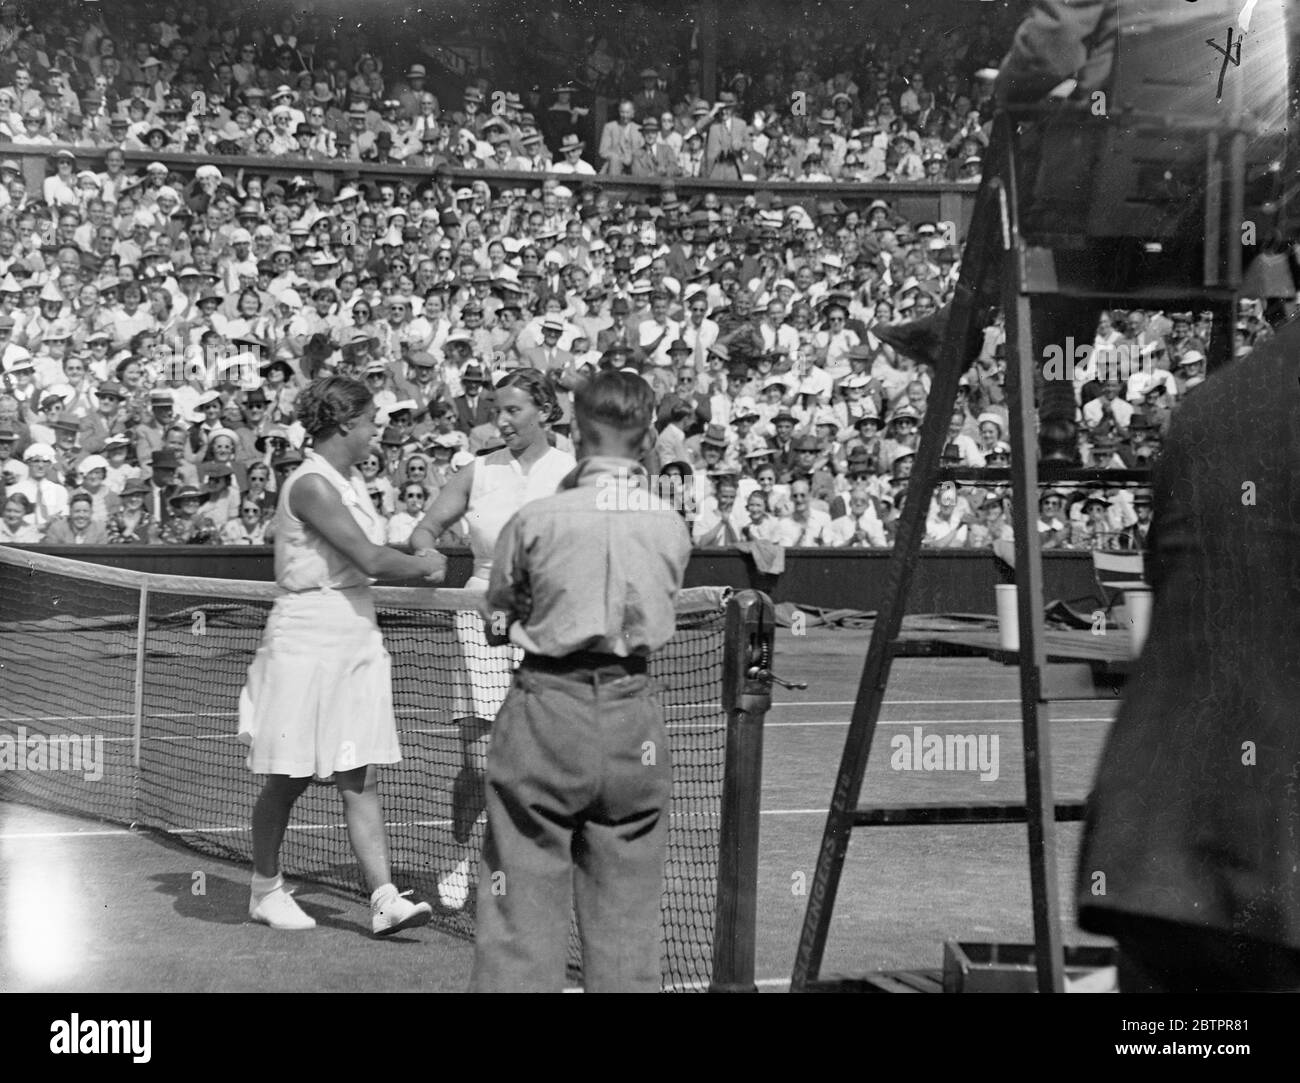 Dorothy Round riprende il titolo di Wimbledon. Giocando in un'ondata di caldo di luglio, la sig.ra Dorothy Round ha riguadagnato il titolo femminile sconfiggendo Mlle Jedrzejowska della Polonia 6-2, 2-6, 7-5, sulla Corte centrale. Foto spettacoli, Dorothy Round (a destra) si è congratulato con Mlle J Jedrzejowska dopo aver vinto il titolo. 3 luglio 1937 Foto Stock